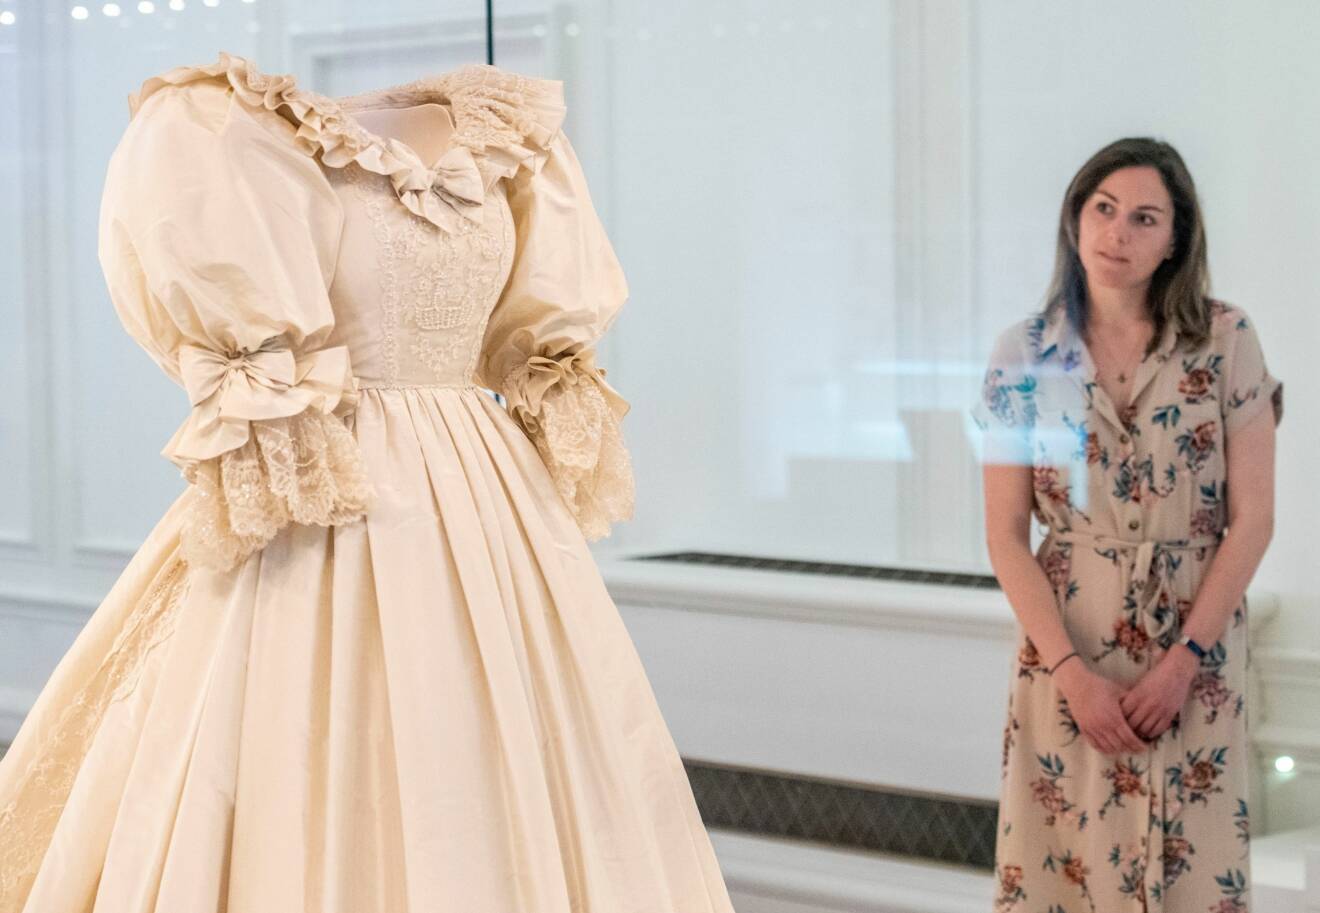 Prinsessan Dianas brudklänning Utställning 2021 Kensington Palace London Royal Style in the Making